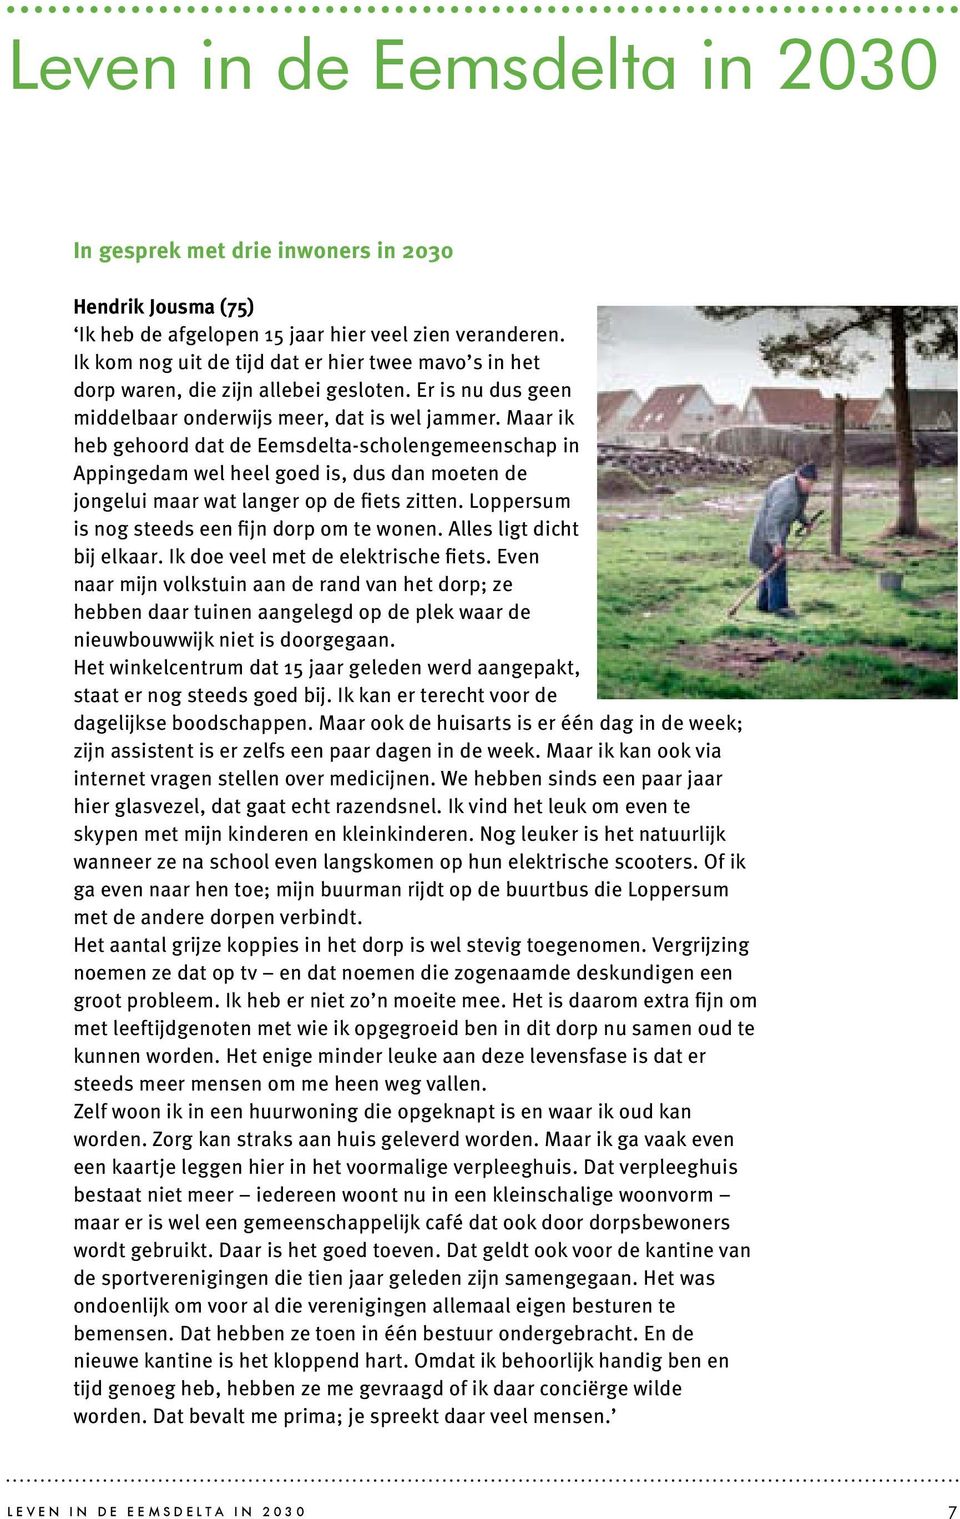 Maar ik heb gehoord dat de Eemsdelta-scholengemeenschap in Appingedam wel heel goed is, dus dan moeten de jongelui maar wat langer op de fiets zitten.